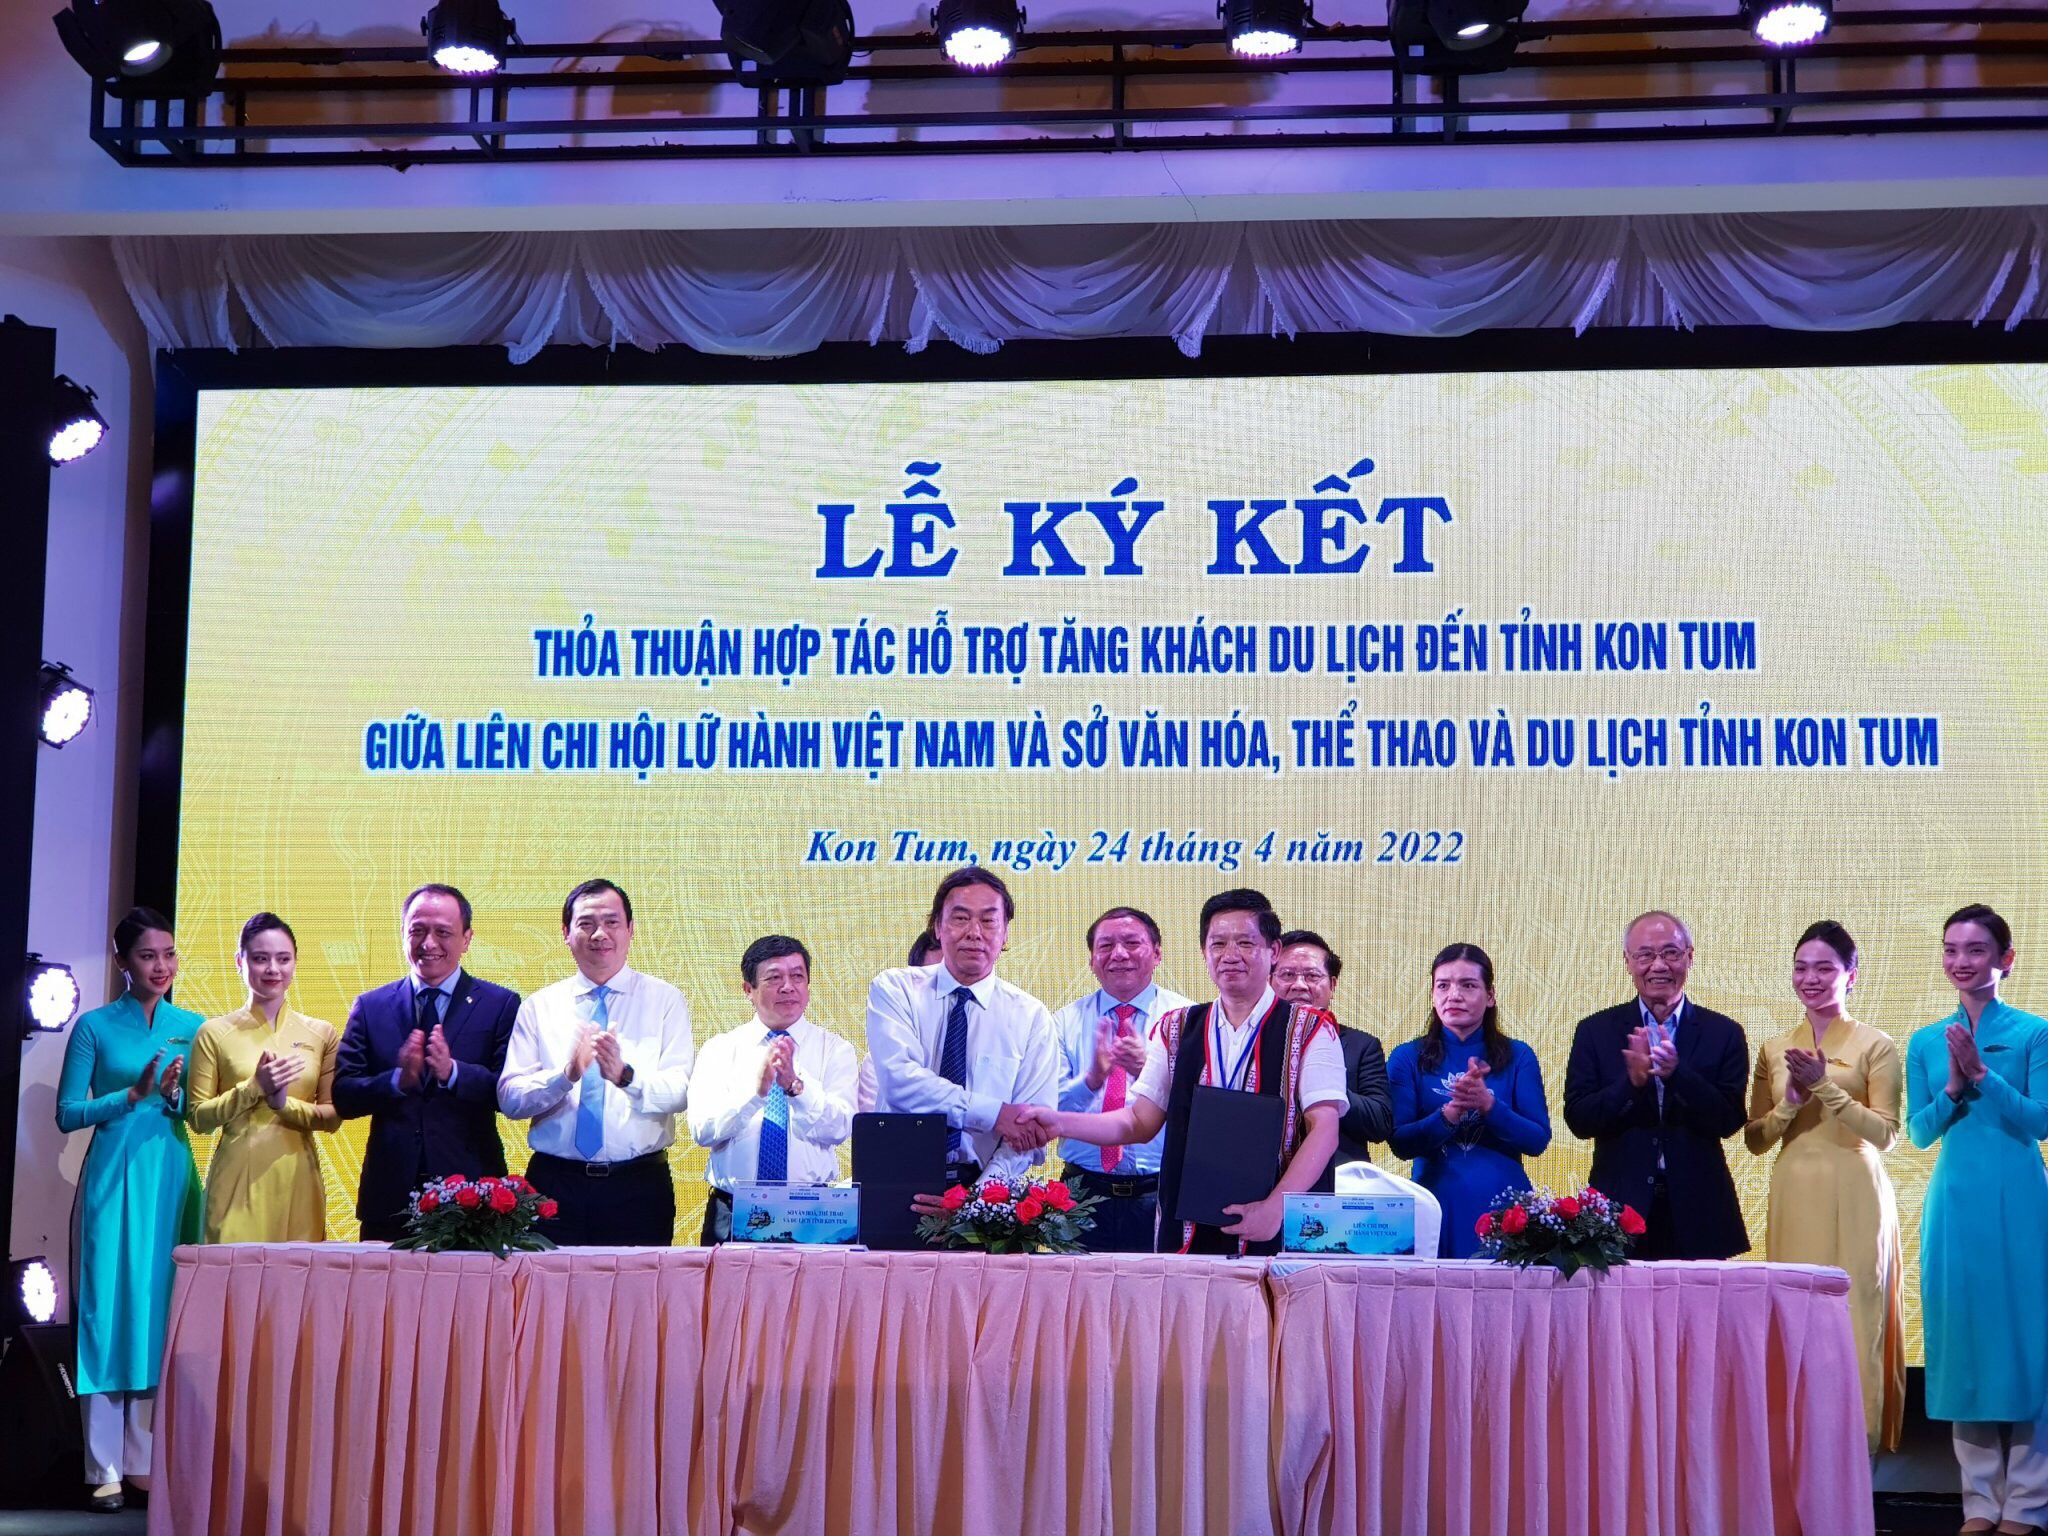 Sở VHTTDL tỉnh Kon Tum, Liên Chi hội Lữ hành Việt Nam ký Thỏa thuận hợp tác về việc tăng khách du lịch đến Kon Tum